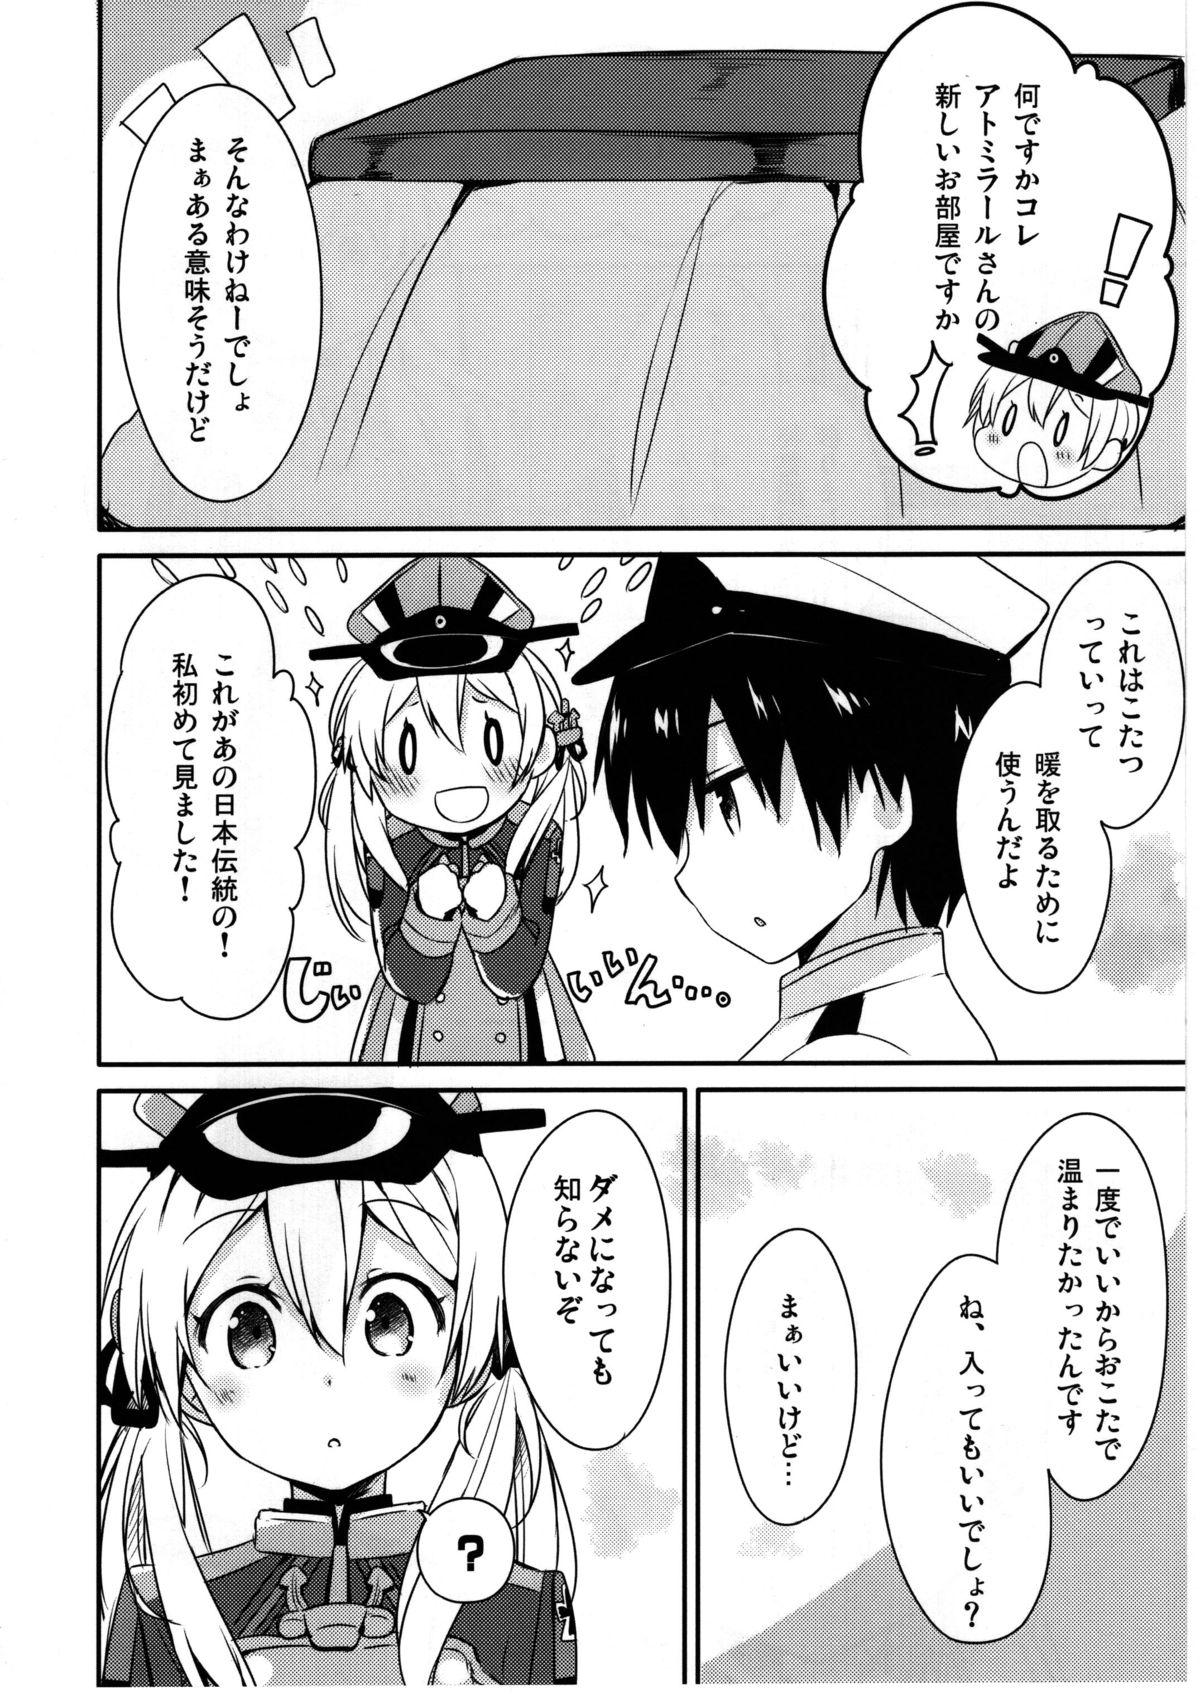 Nena Admiral-san Atatakai no ga Iino? - Kantai collection Chupando - Page 6